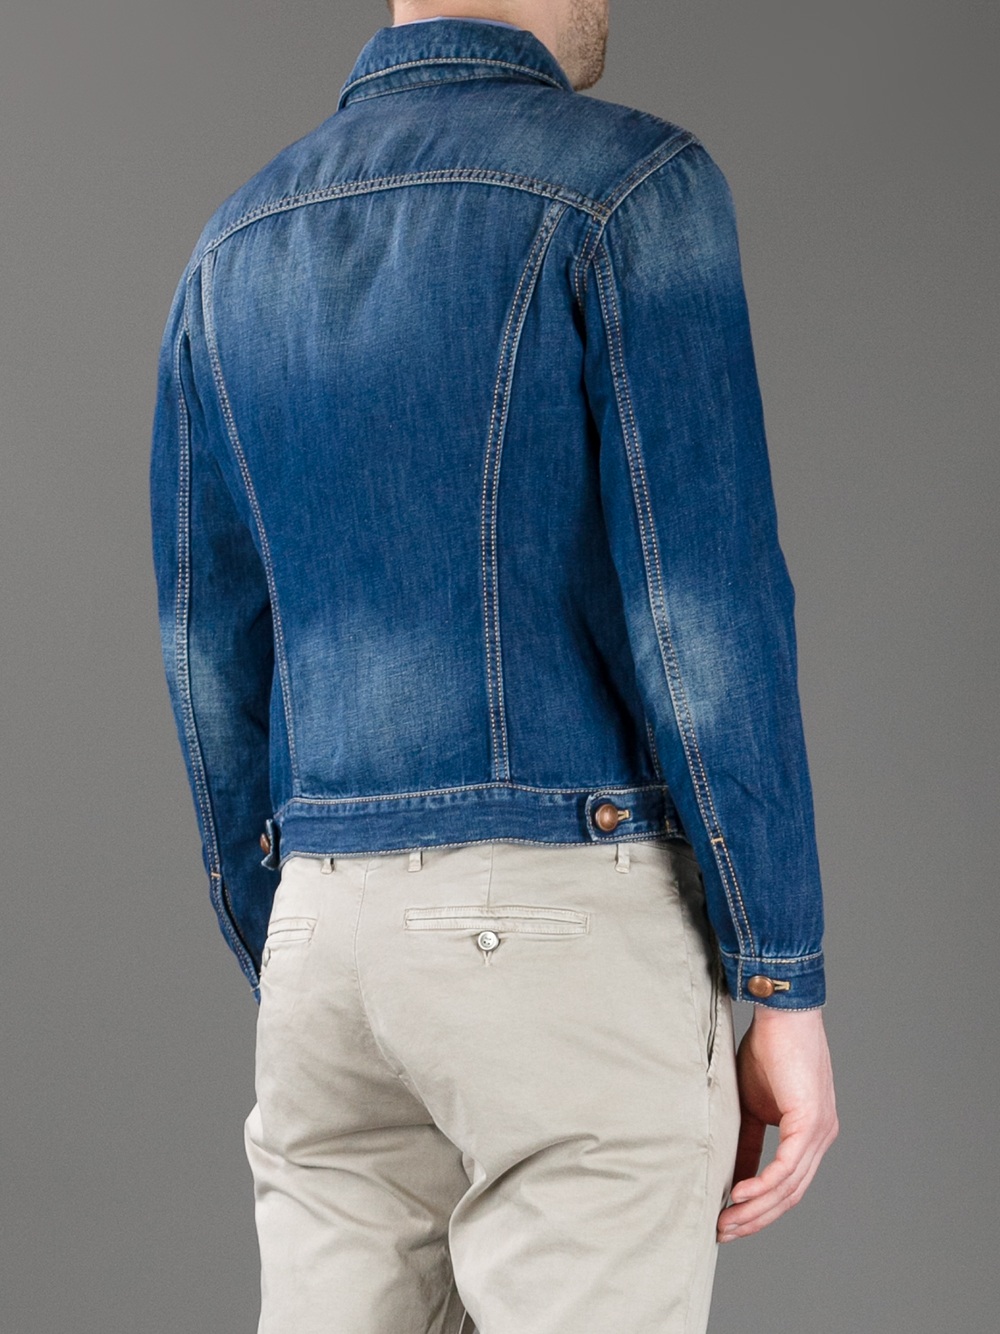 Jacob Cohen Denim Jacket in Blue for Men - Lyst